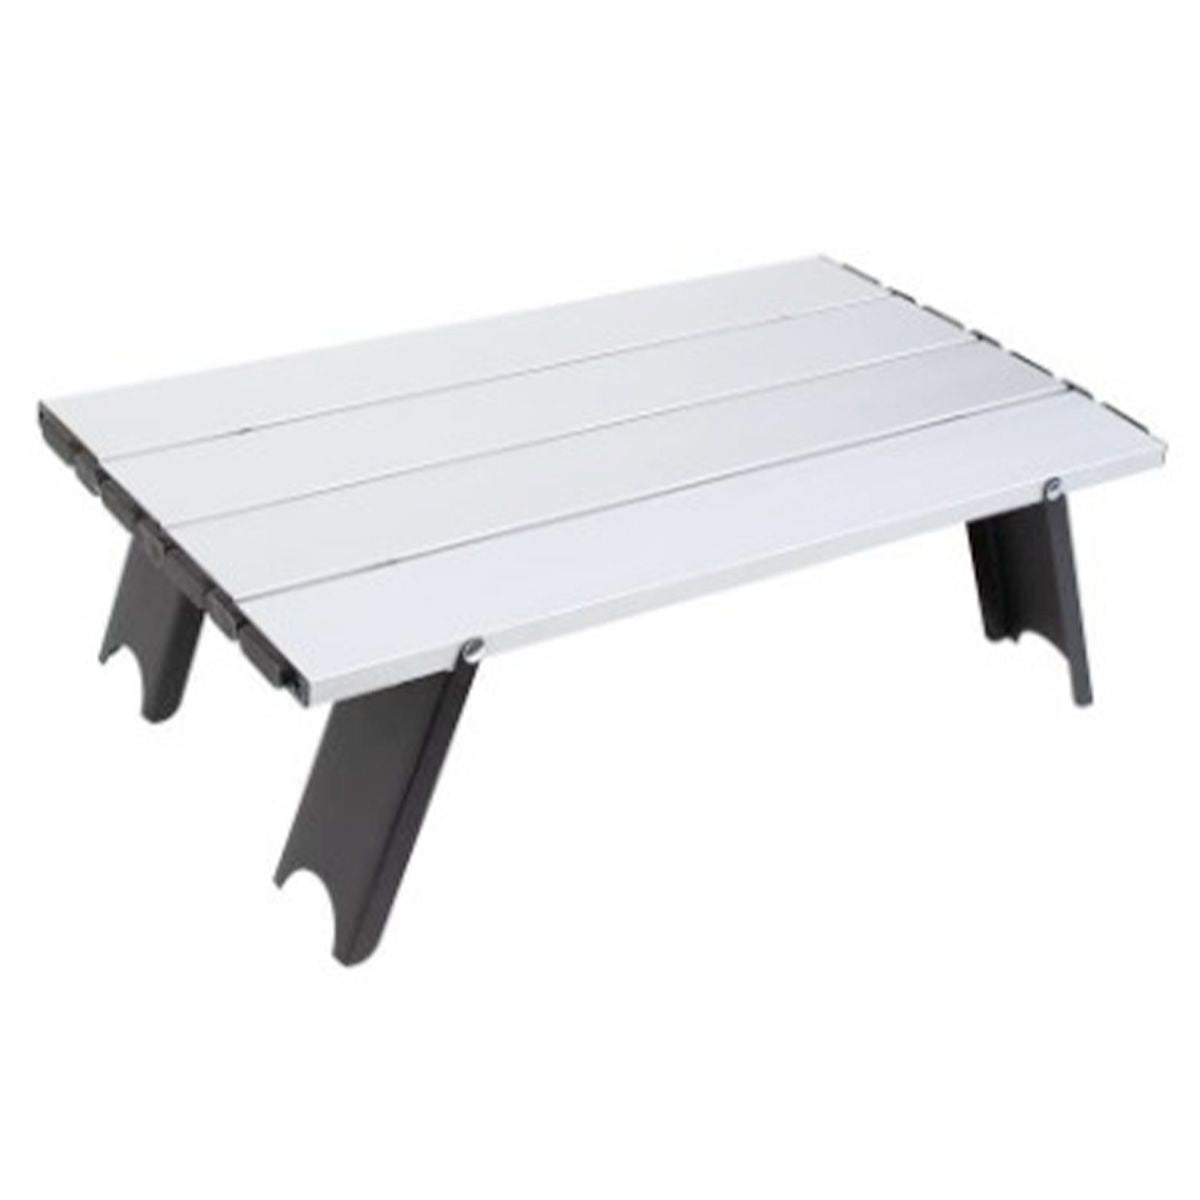 アウトドアテーブル レジャーテーブル 折りたたみ軽量アルミローテーブル 40×23×12cm 323677